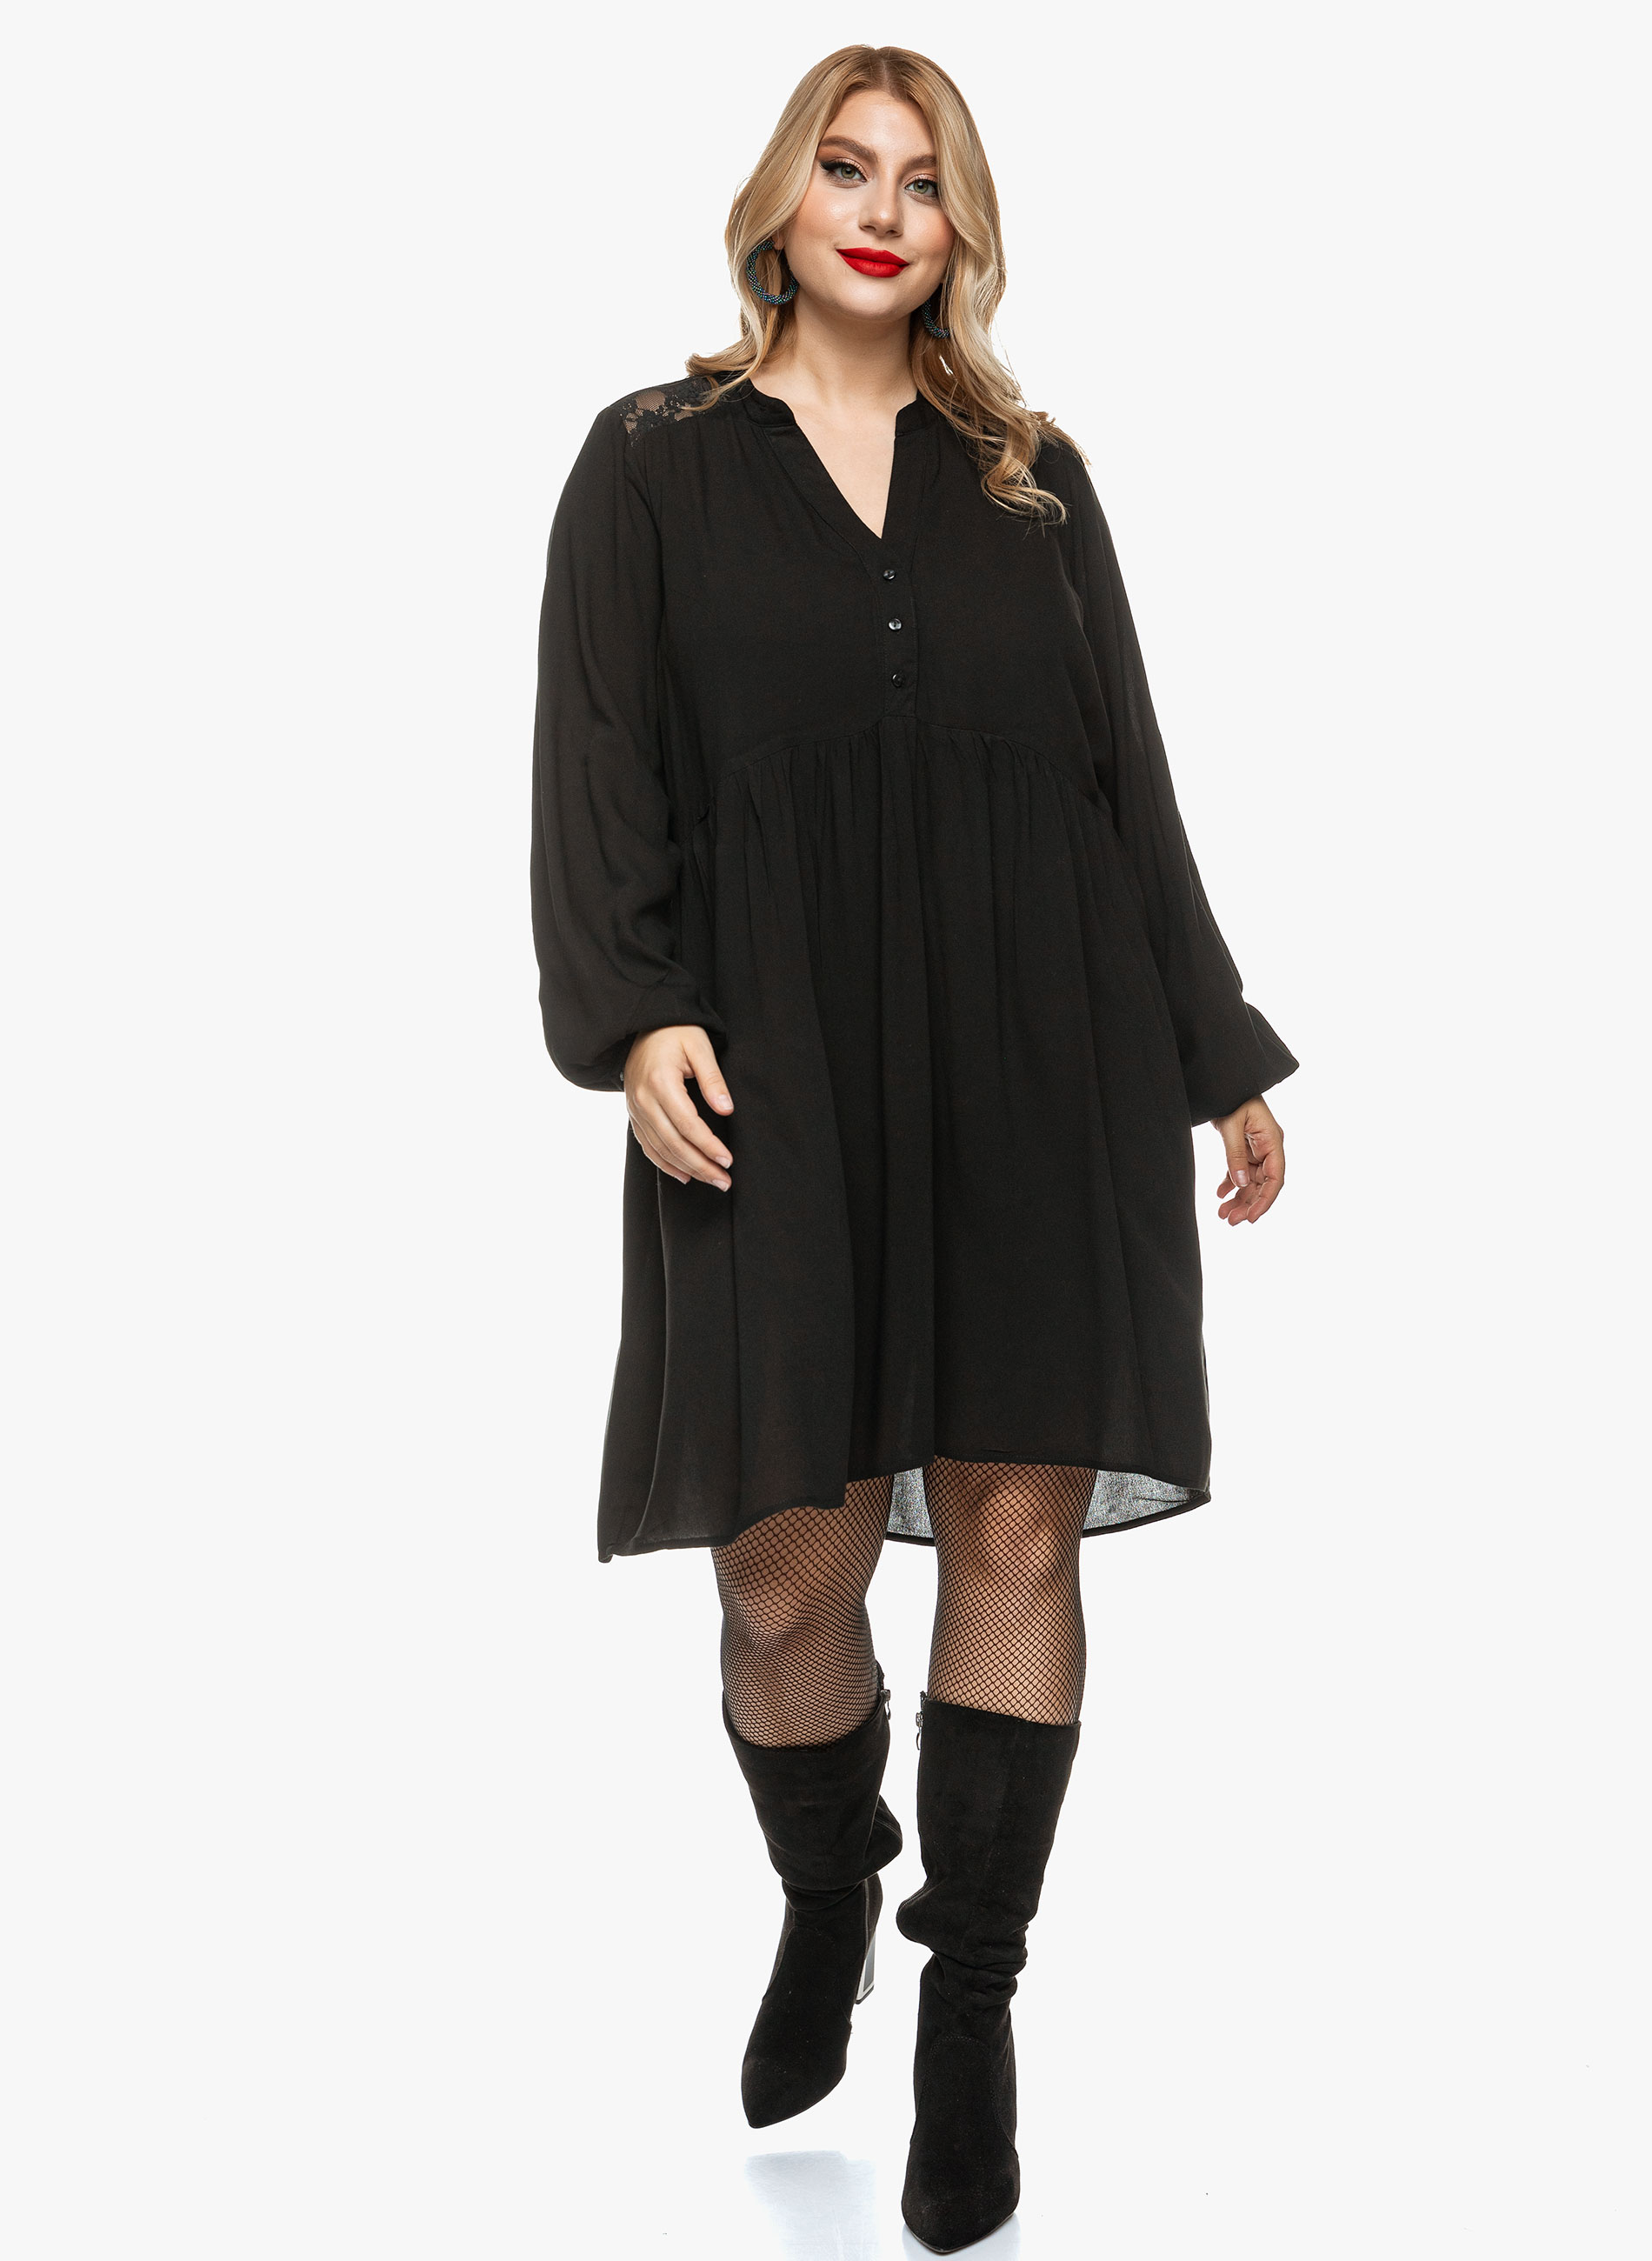 Φόρεμα Μαύρο με Λεπτομέρειες Δαντέλας 4076